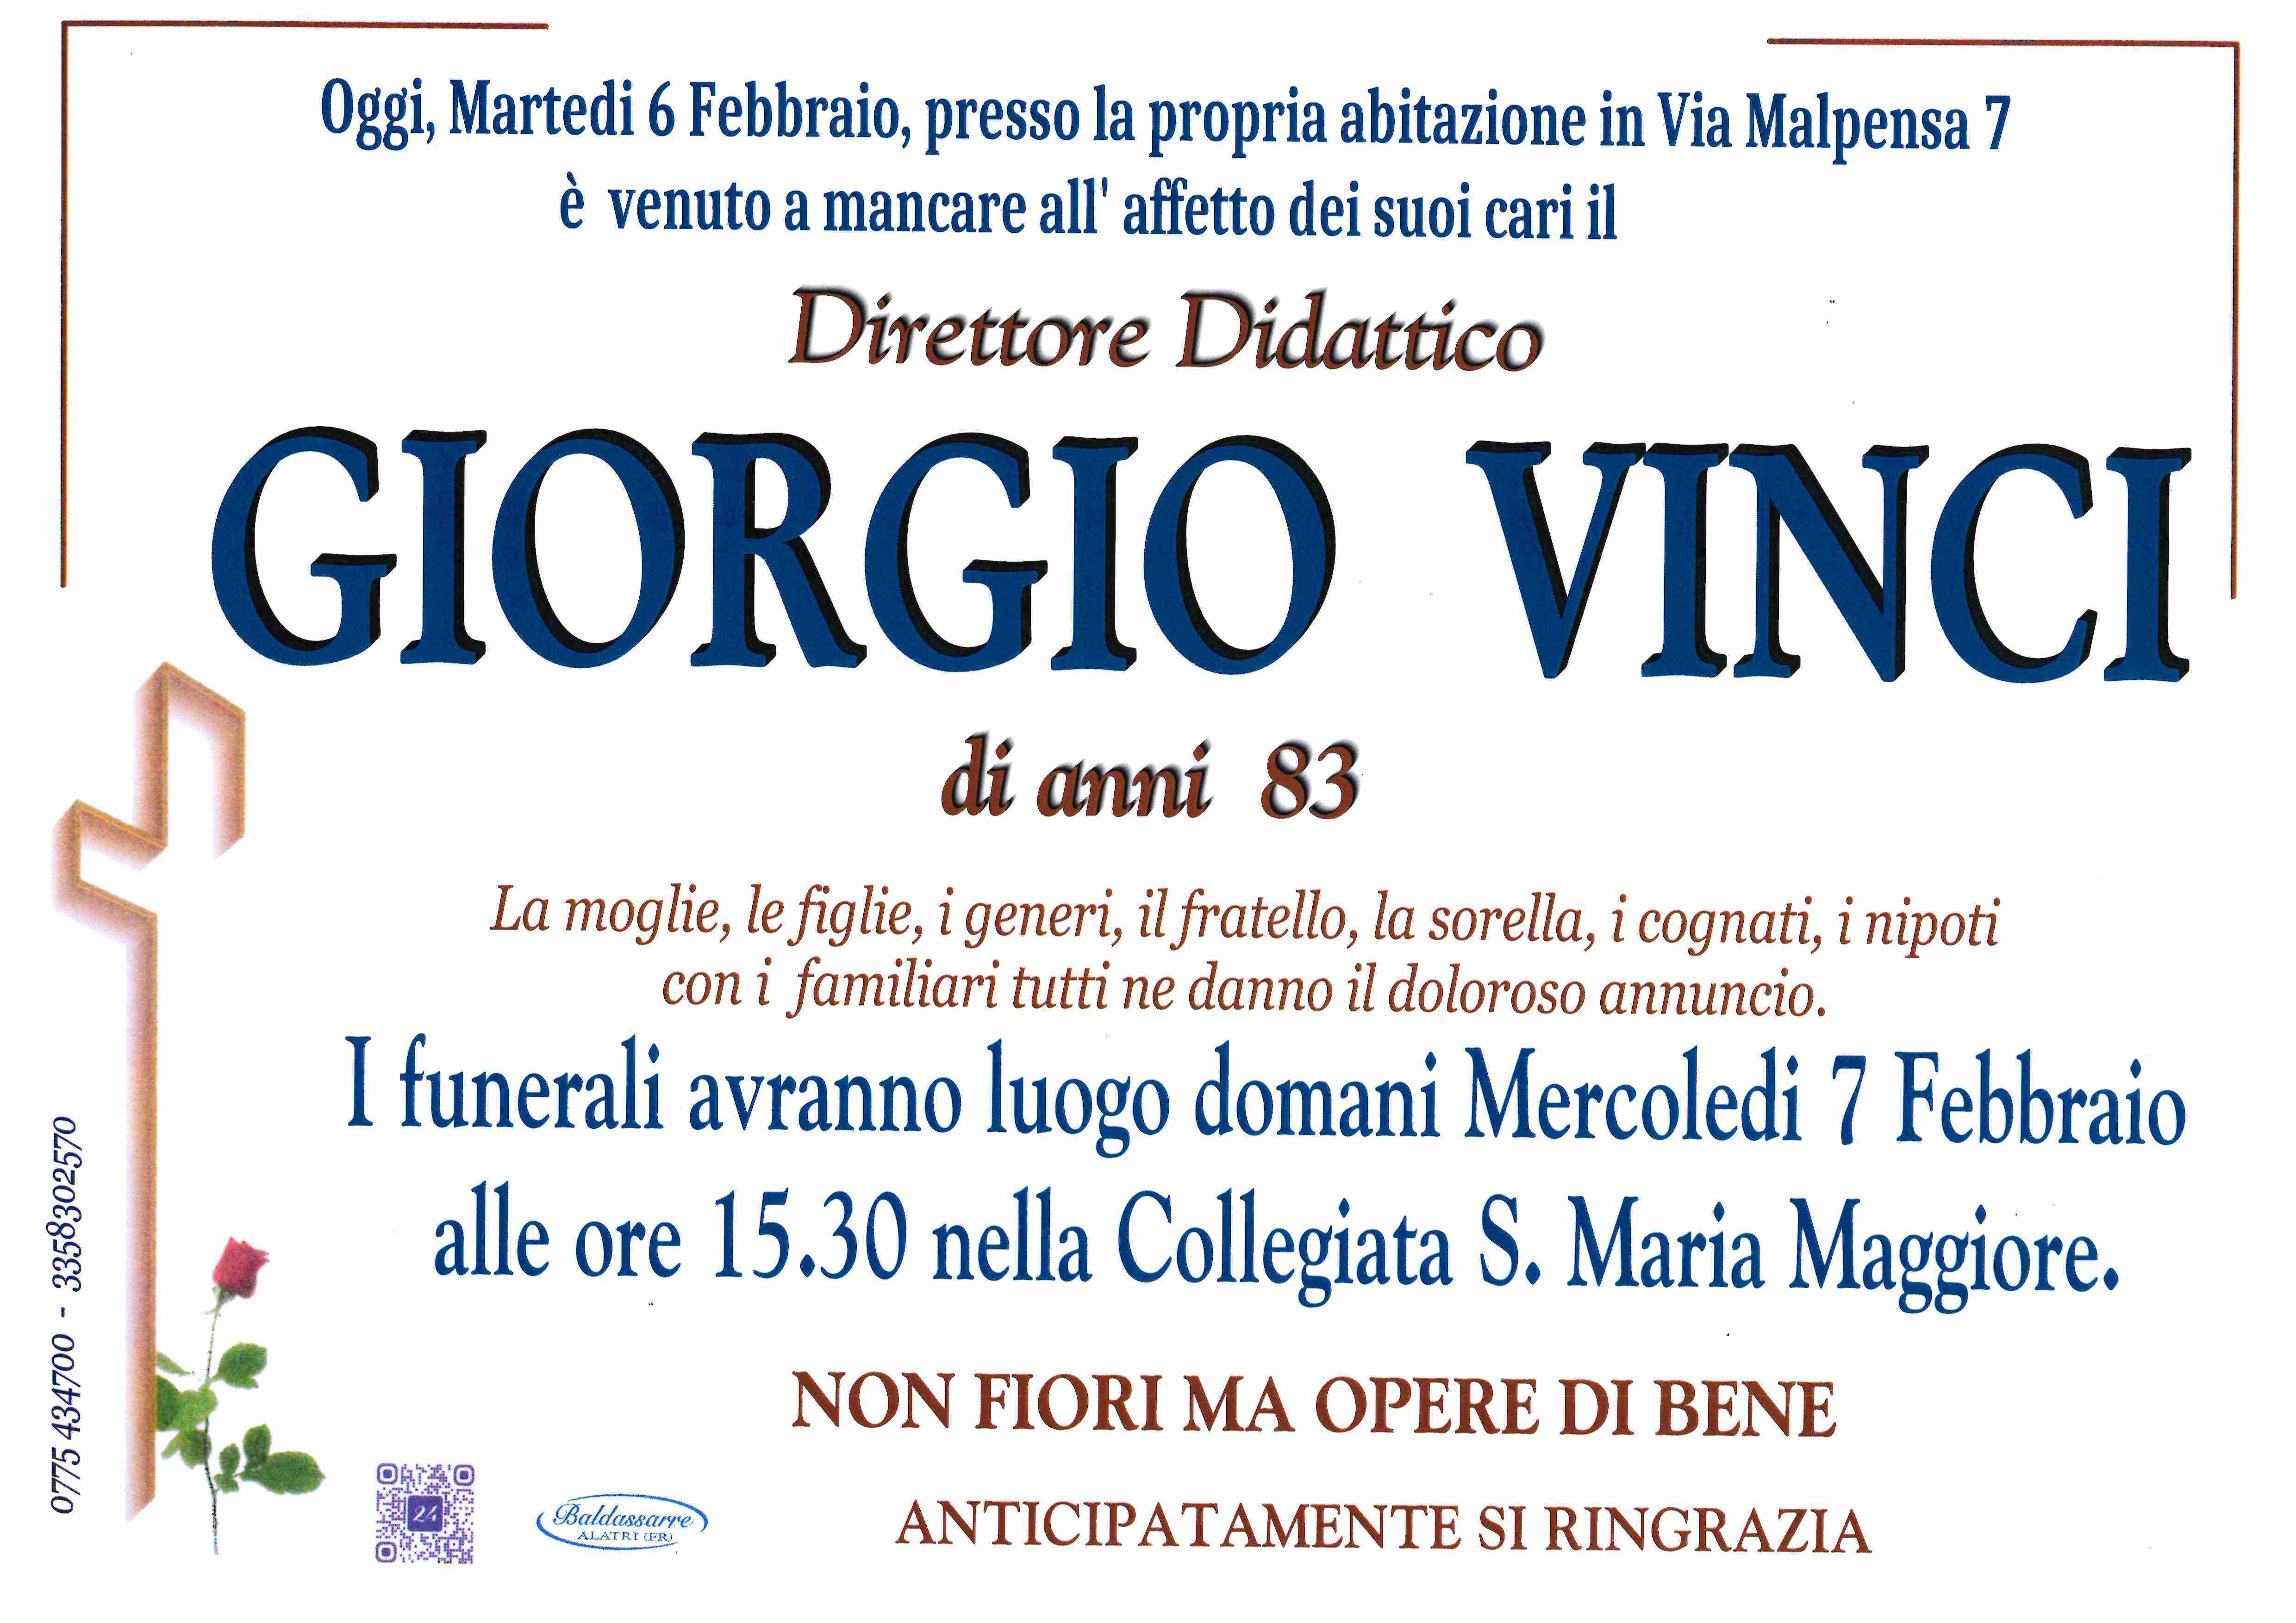 Giorgio Vinci